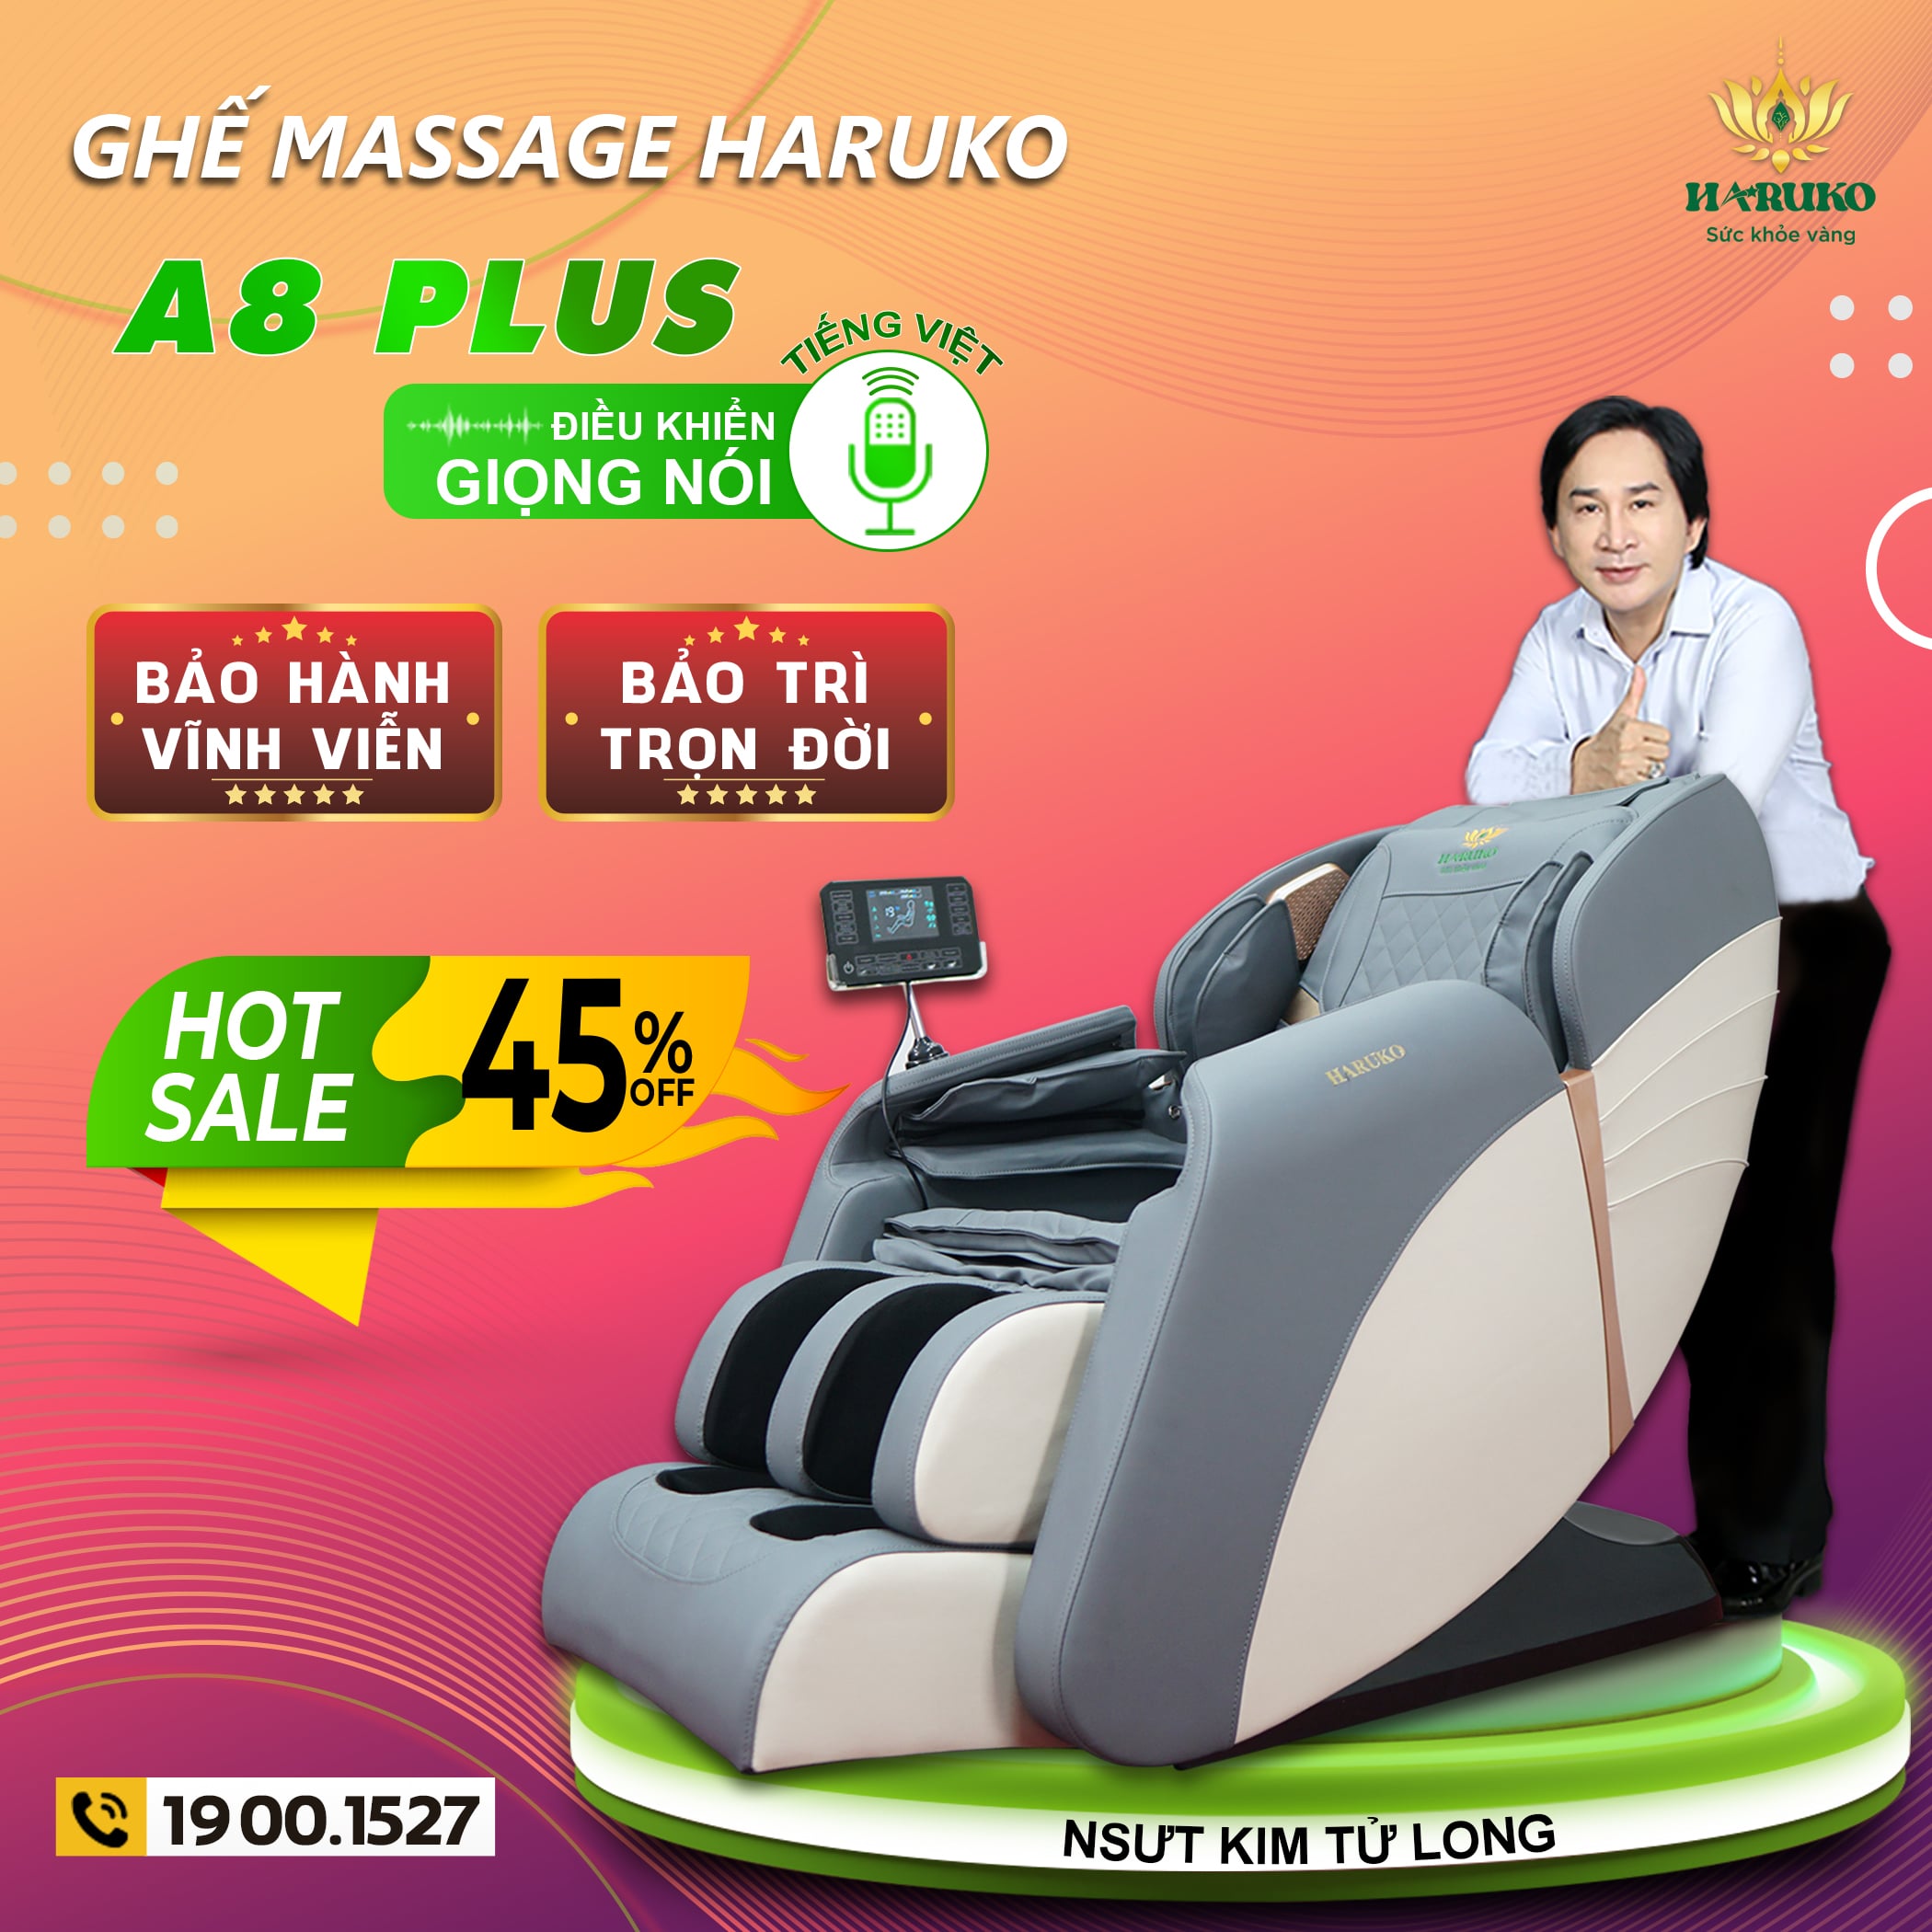 Ghế massage Haruko là một trong những dòng sản phẩm bán chạy nhất thị trường hiện nay 